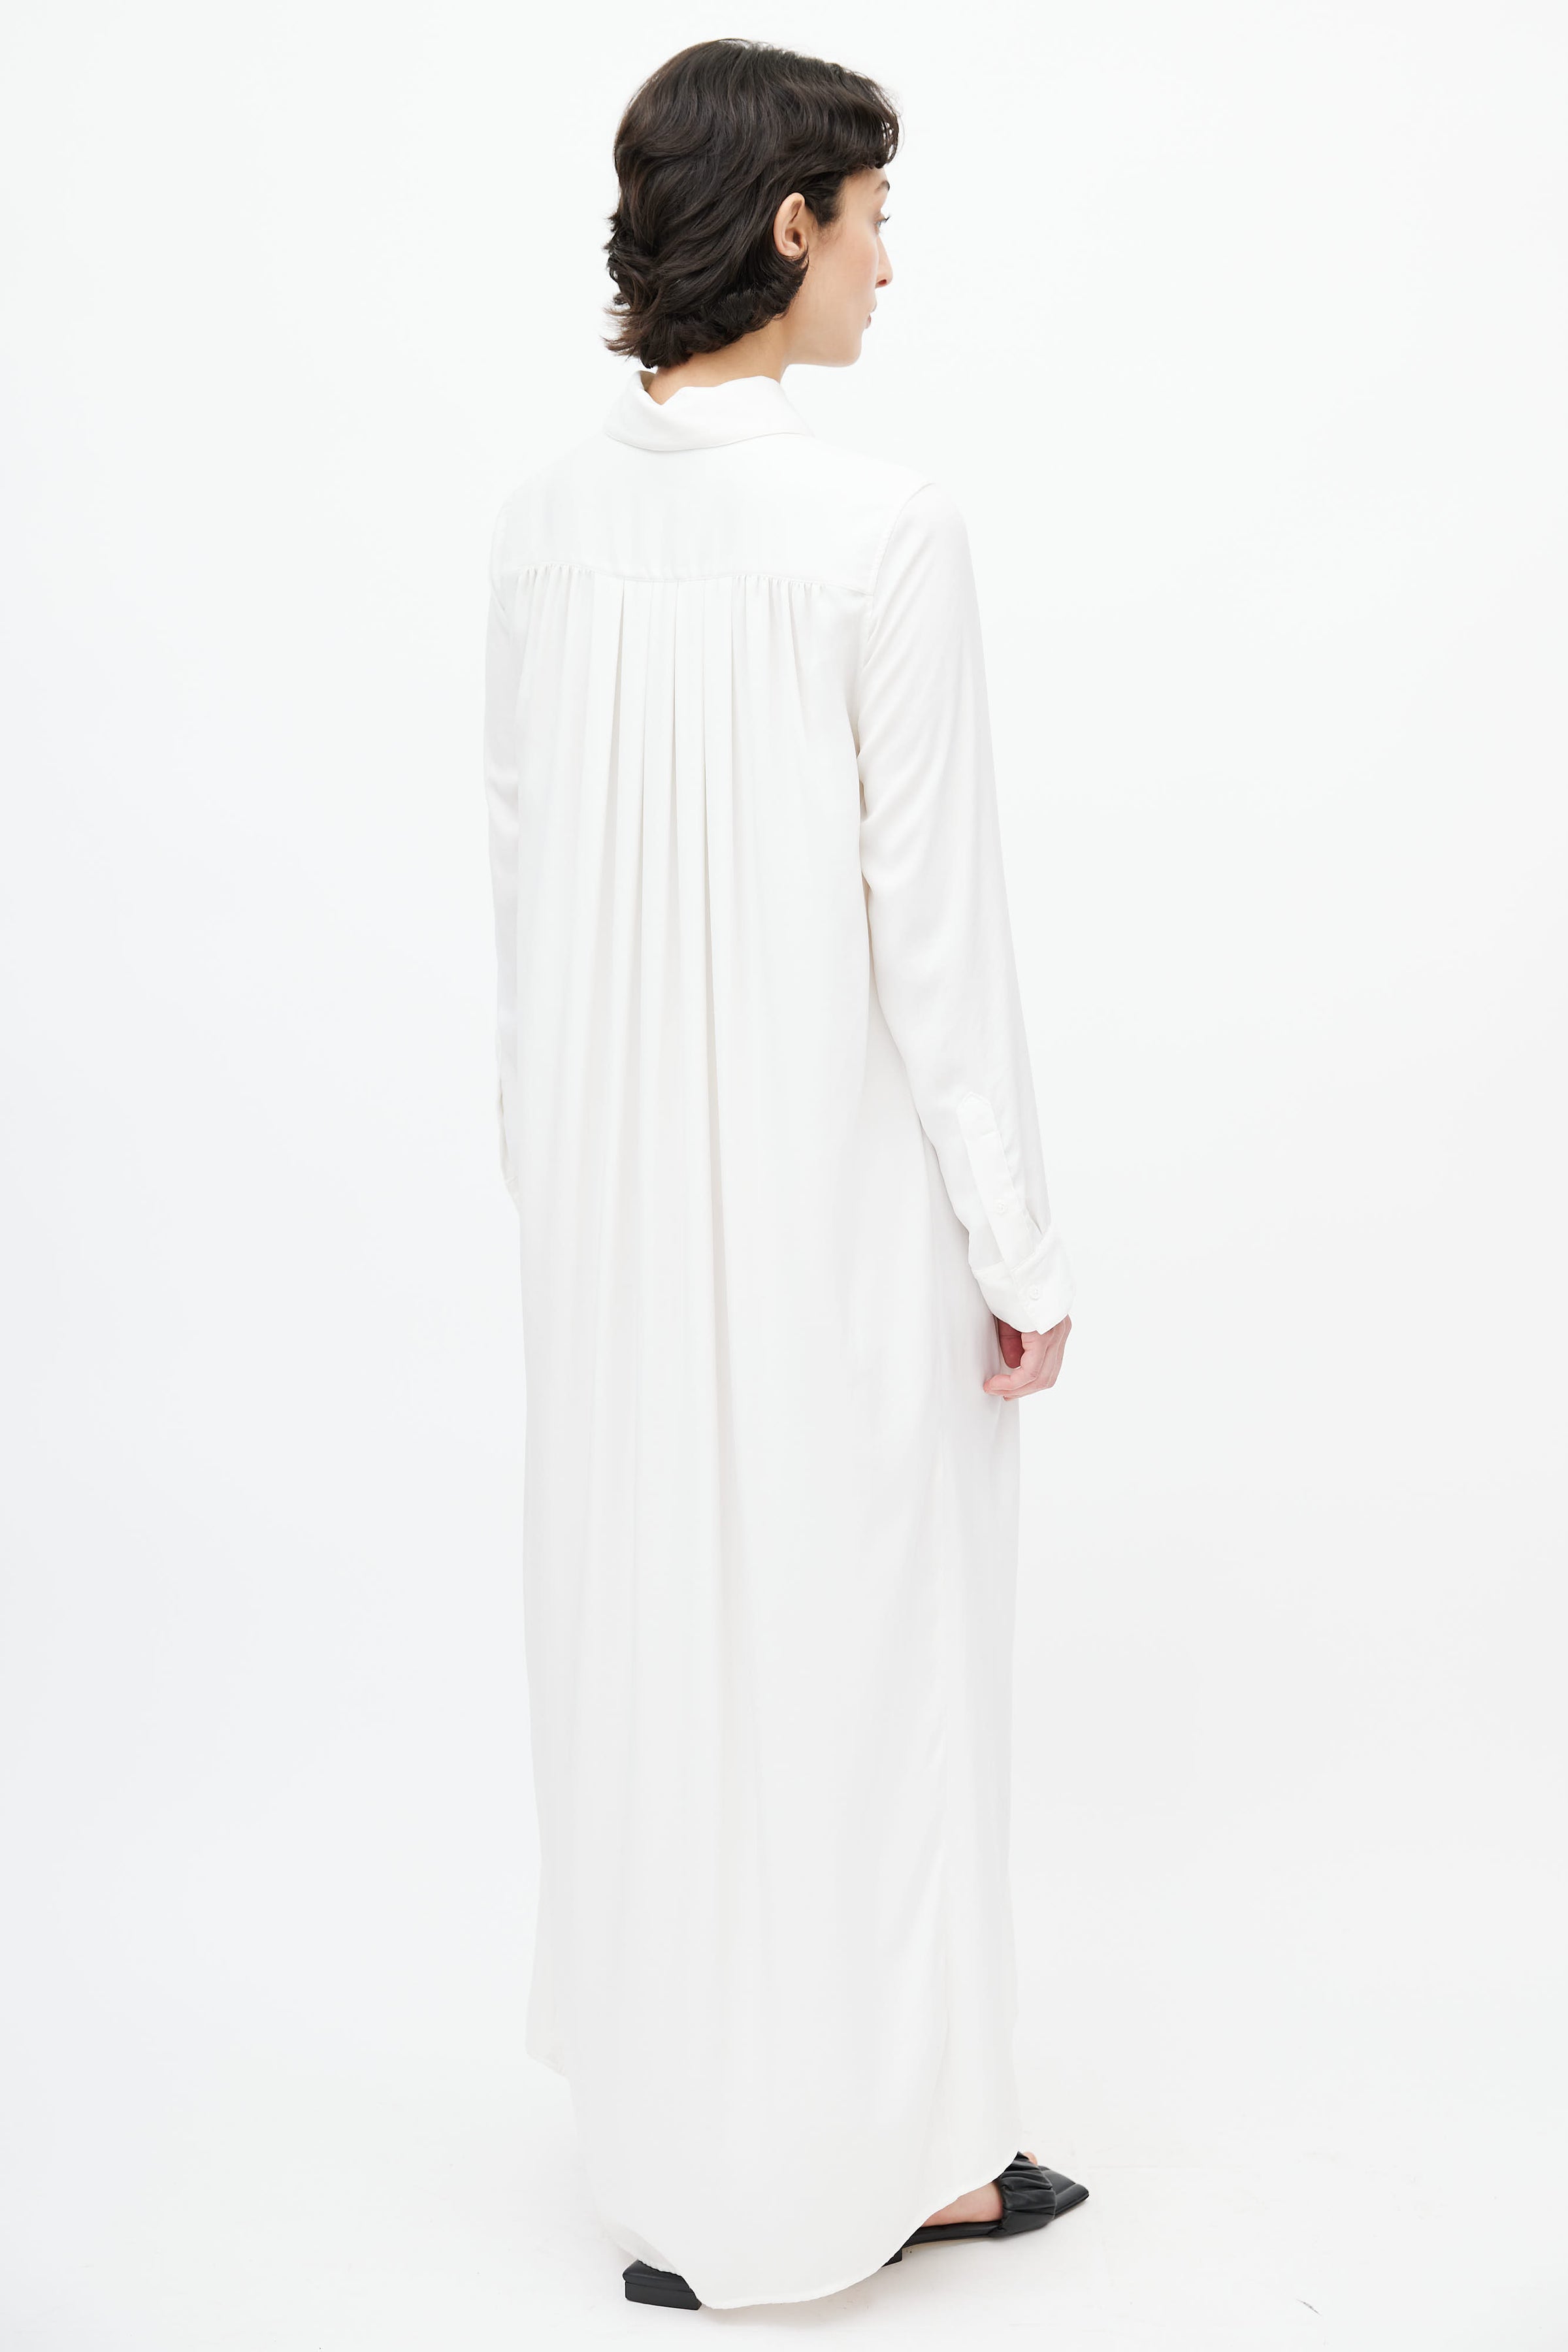 The Row // White Shirt Dress – VSP Consignment